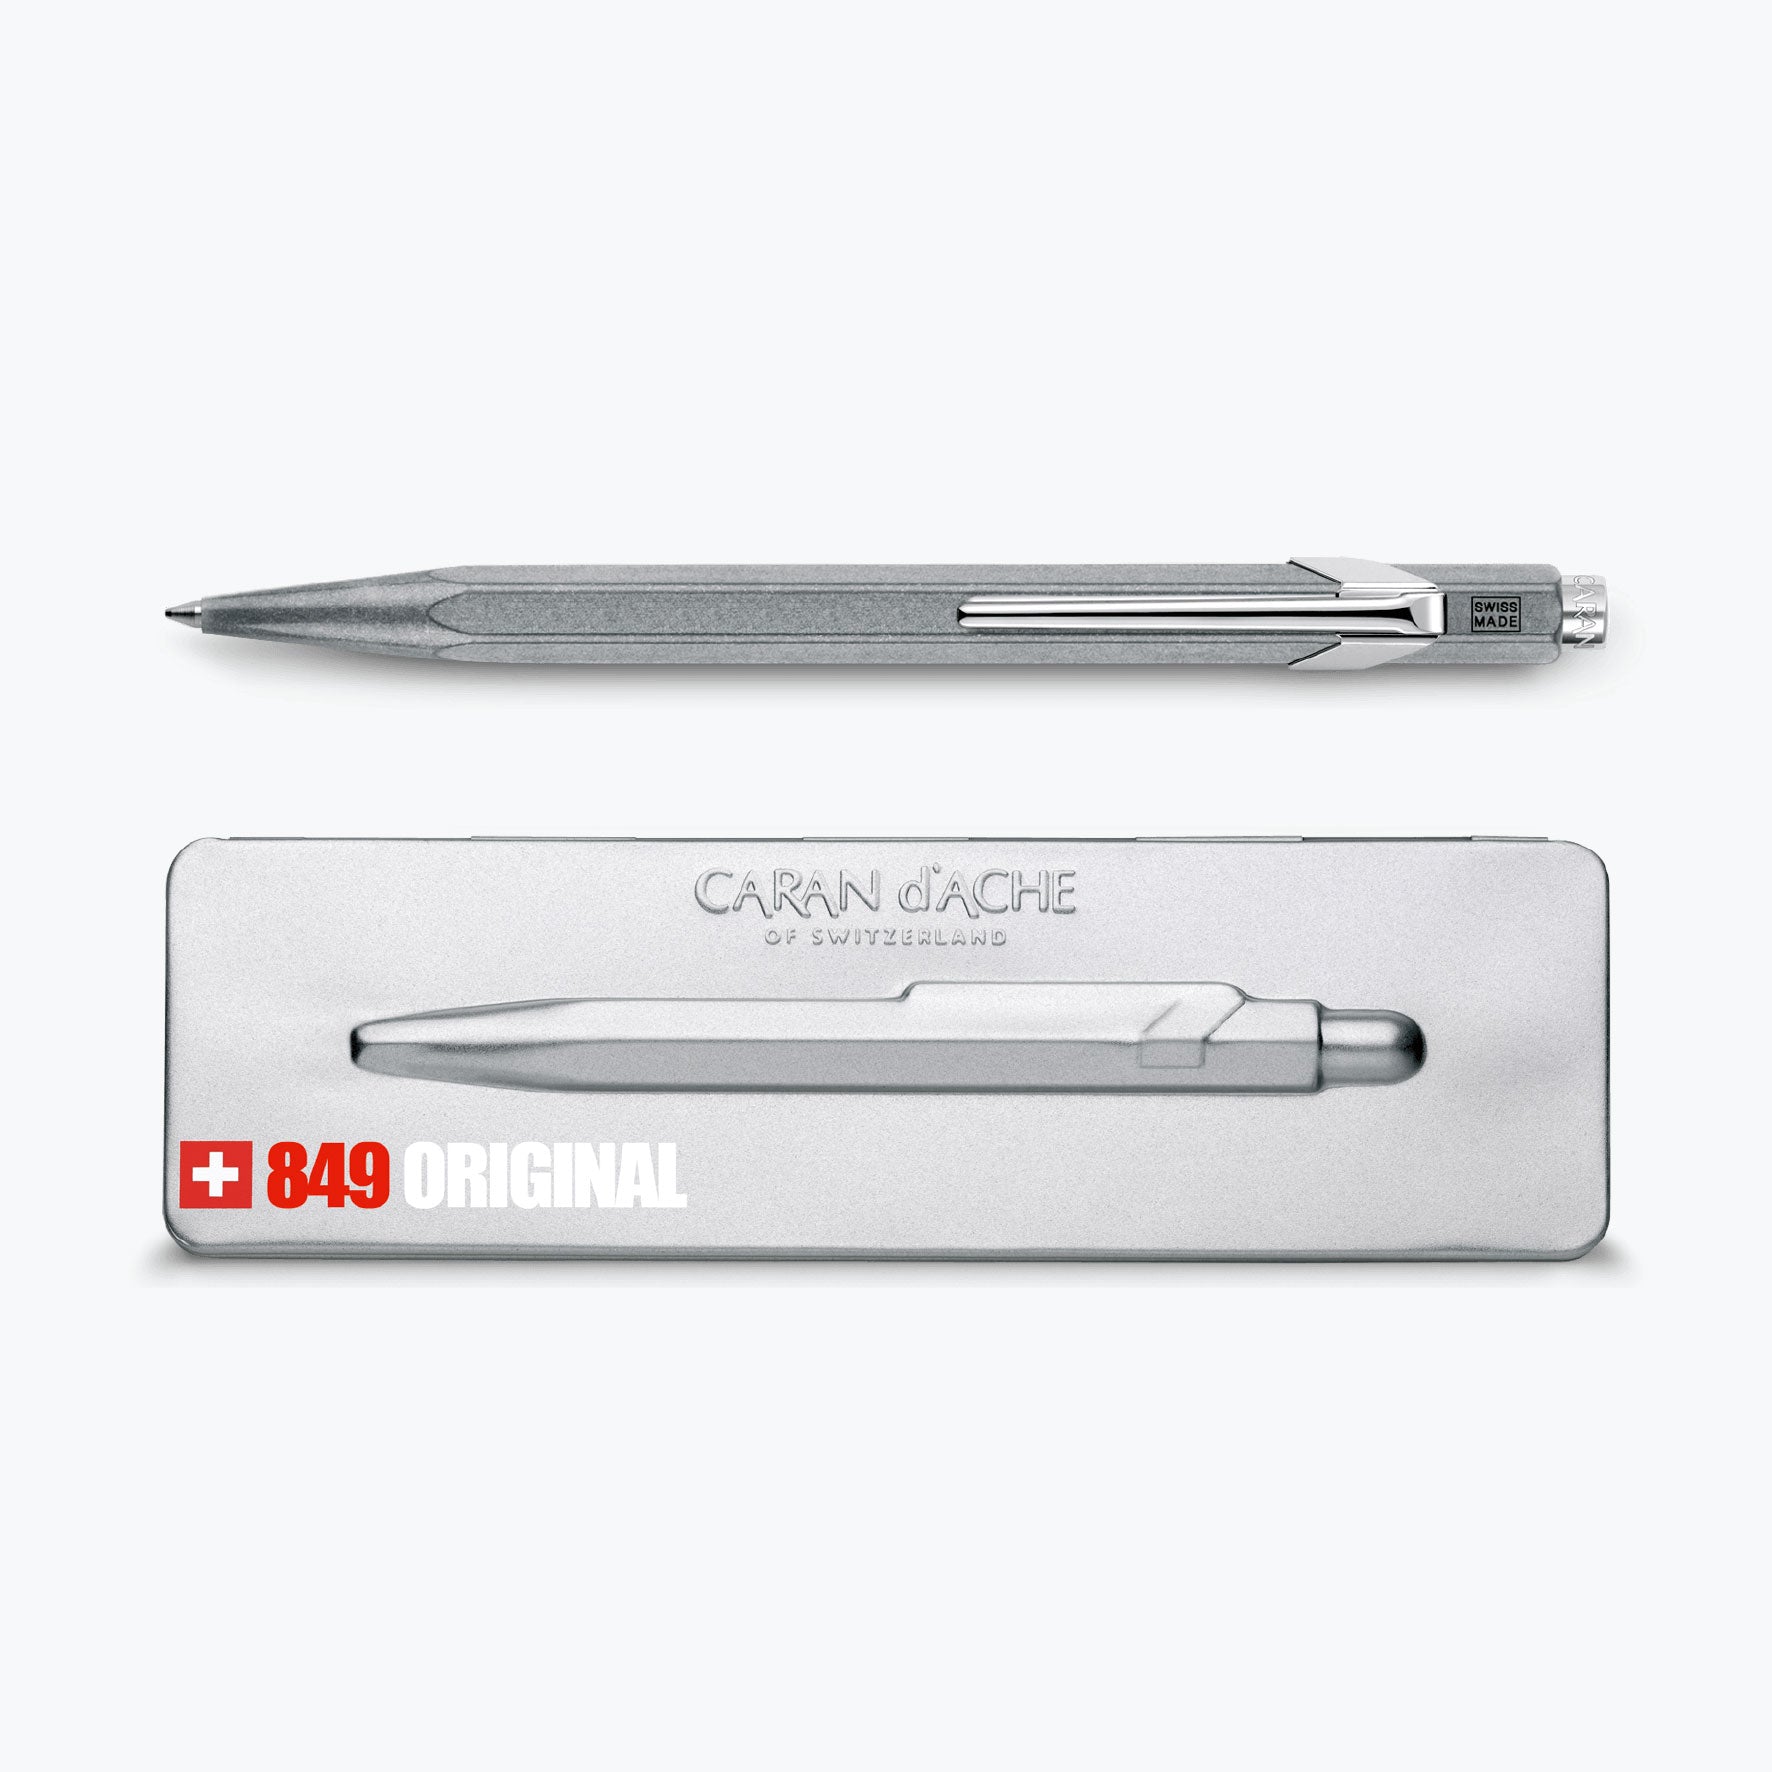 Caran d'Ache - Ballpoint Pen - 849 Bar - Original